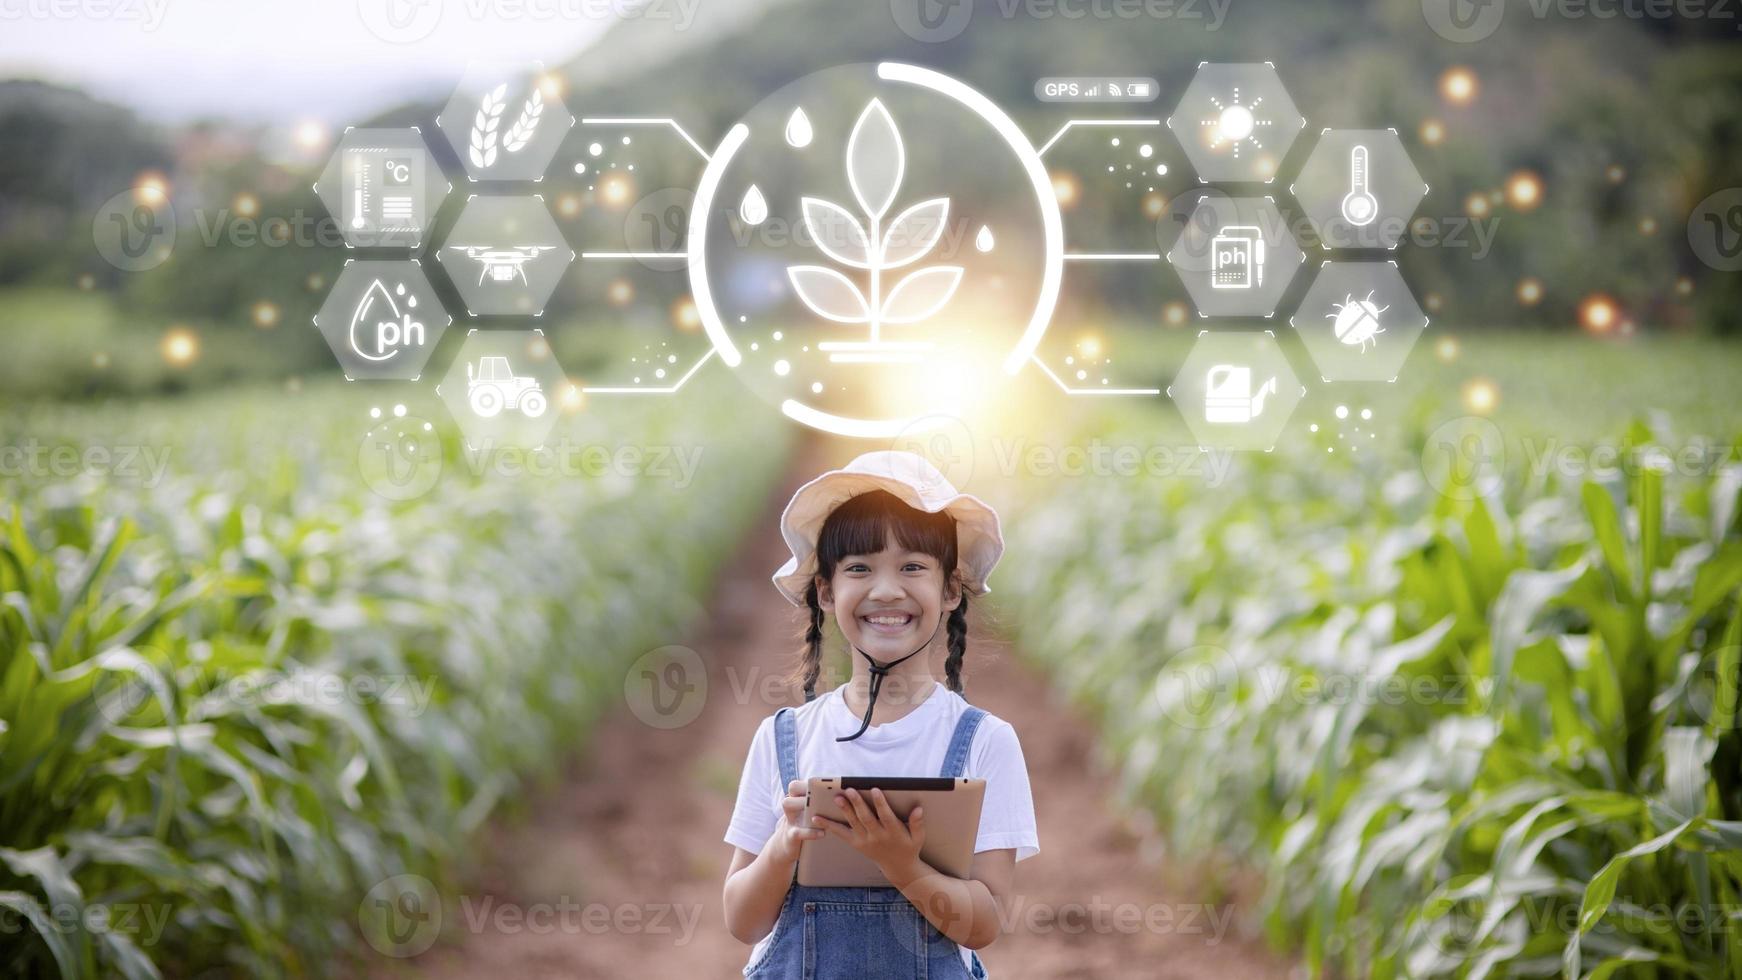 la niña usa una tableta para analizar el crecimiento de las plantas en la parcela agrícola y el icono visual, el concepto de tecnología agrícola. concepto de aprendizaje de agricultura inteligente foto